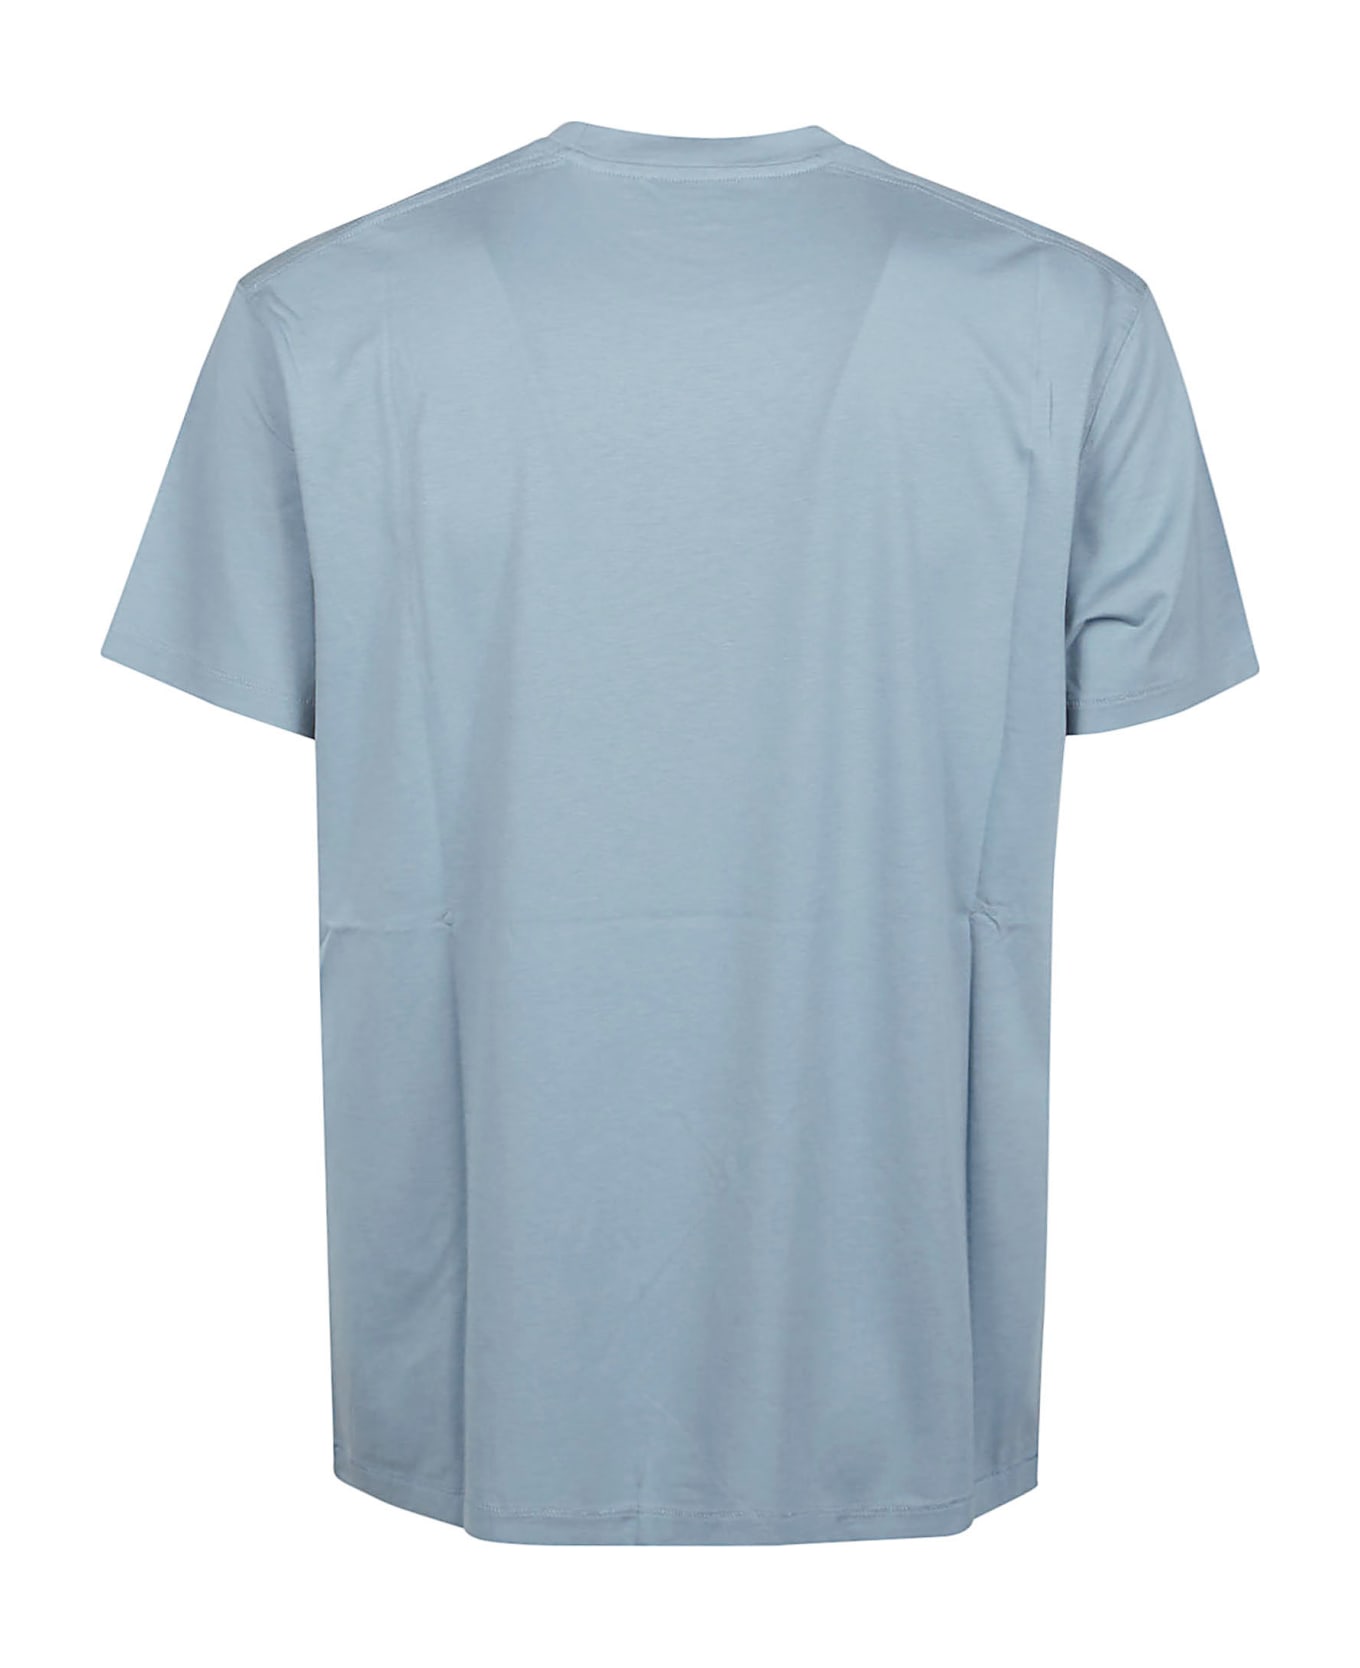 Tom Ford T-shirt - SKY BLUE